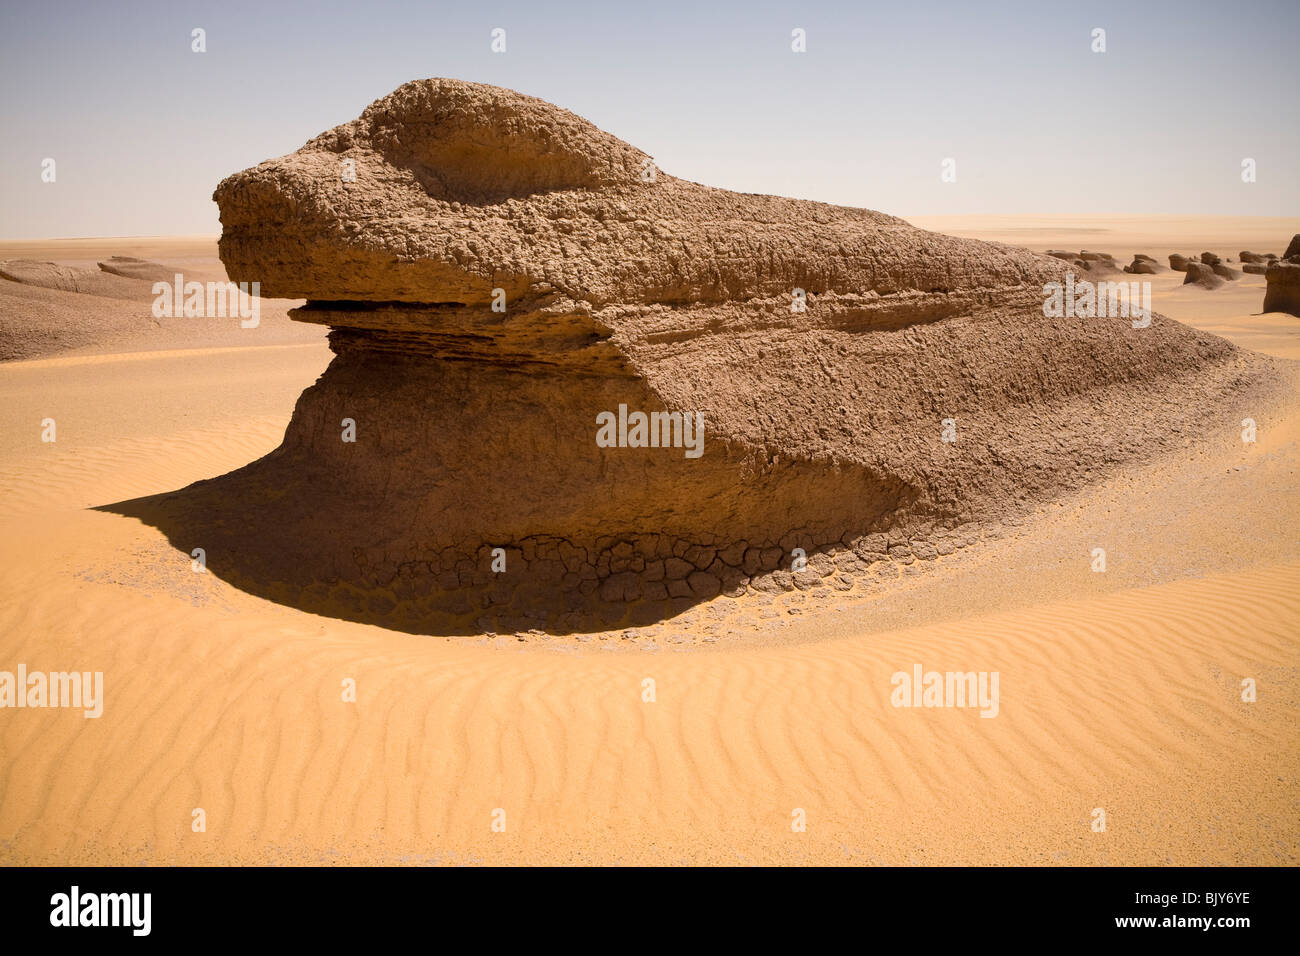 Close up de Yardang, ou la boue des lions, à la mi journée en désert du Sahara, en route vers le Gilf Kebir, Désert occidental de l'Égypte Banque D'Images